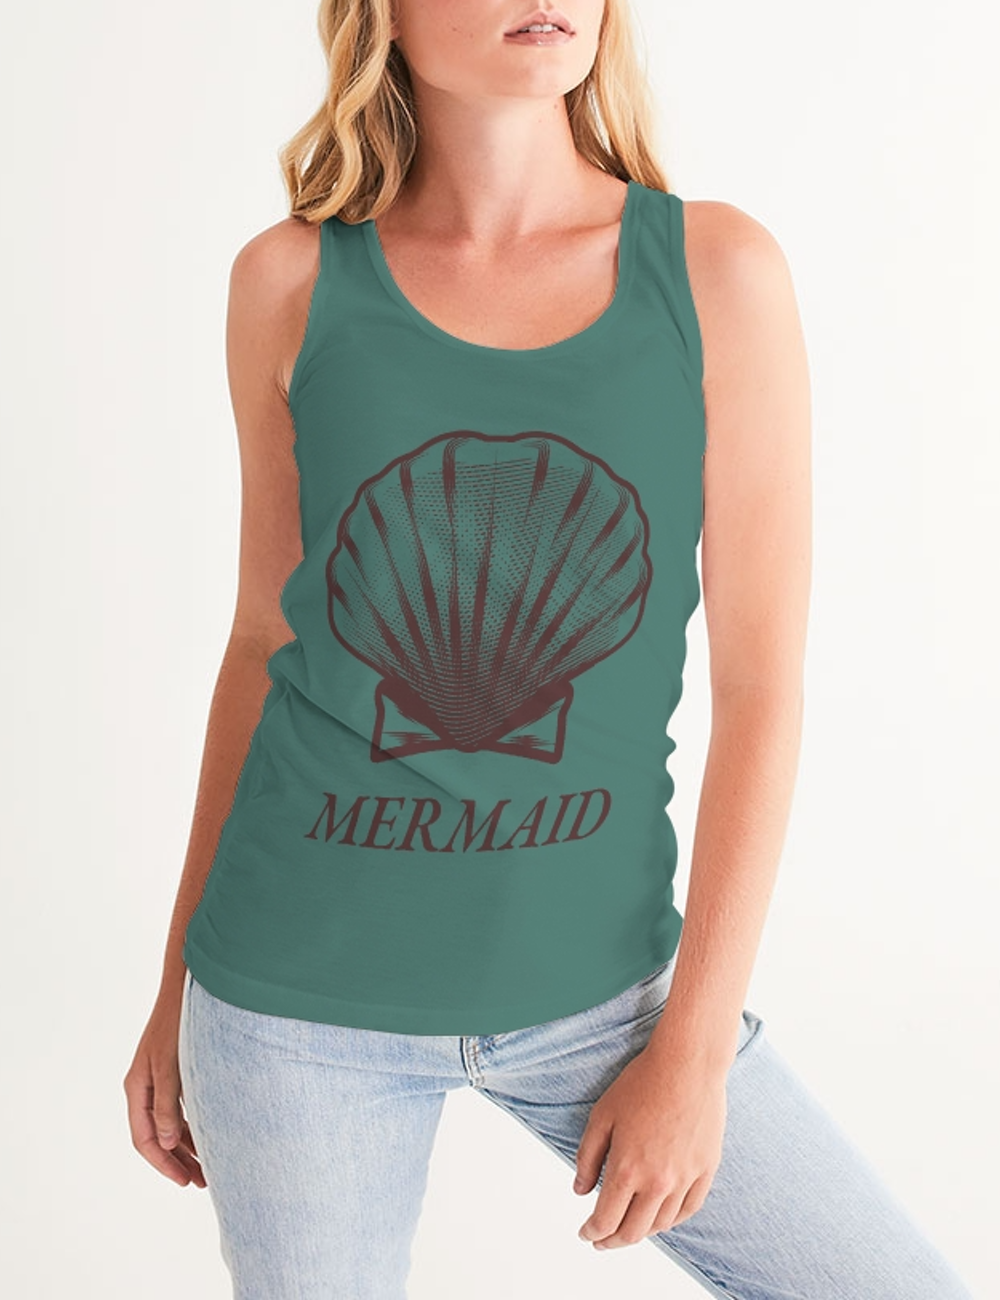 Mermaid Shell | Women's Premium Fitted Tank Top OniTakai